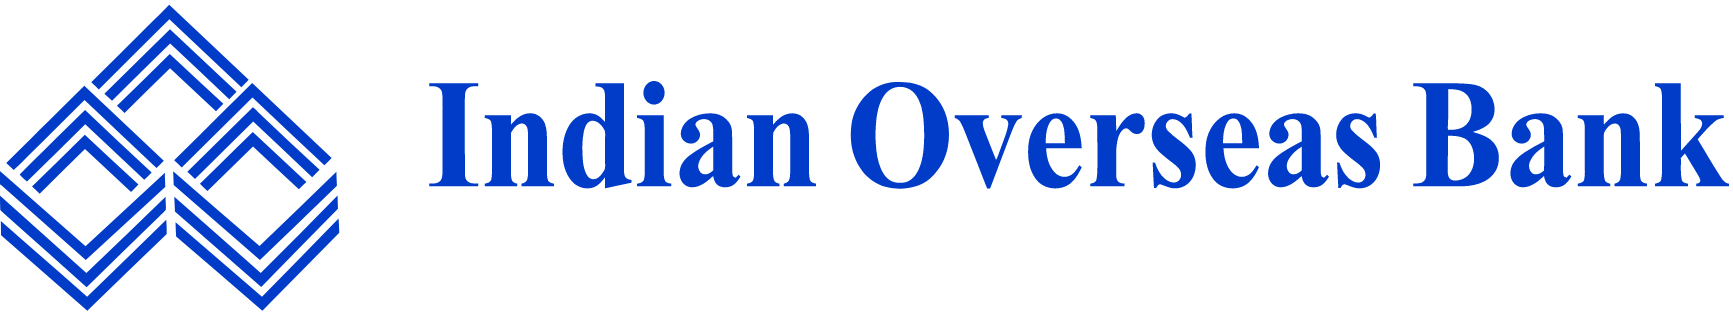 Indian Overseas Bank
 logo large (transparent PNG)